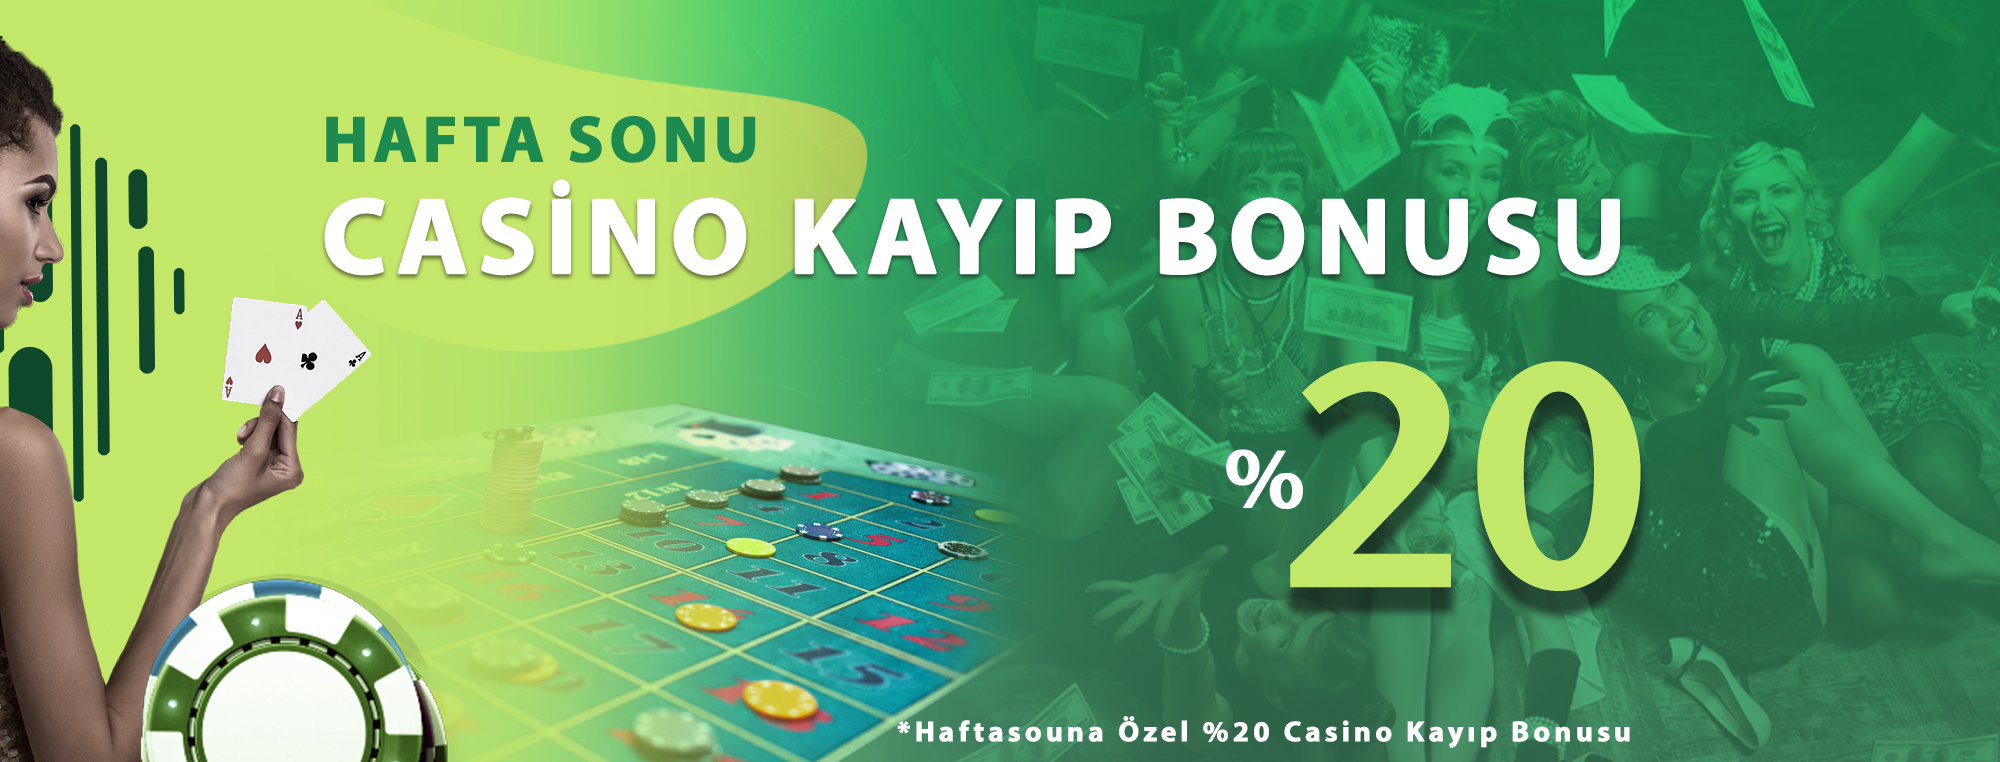 Cepbahis Hafta Sonu Özel %20 Casino Kayıp Bonusu